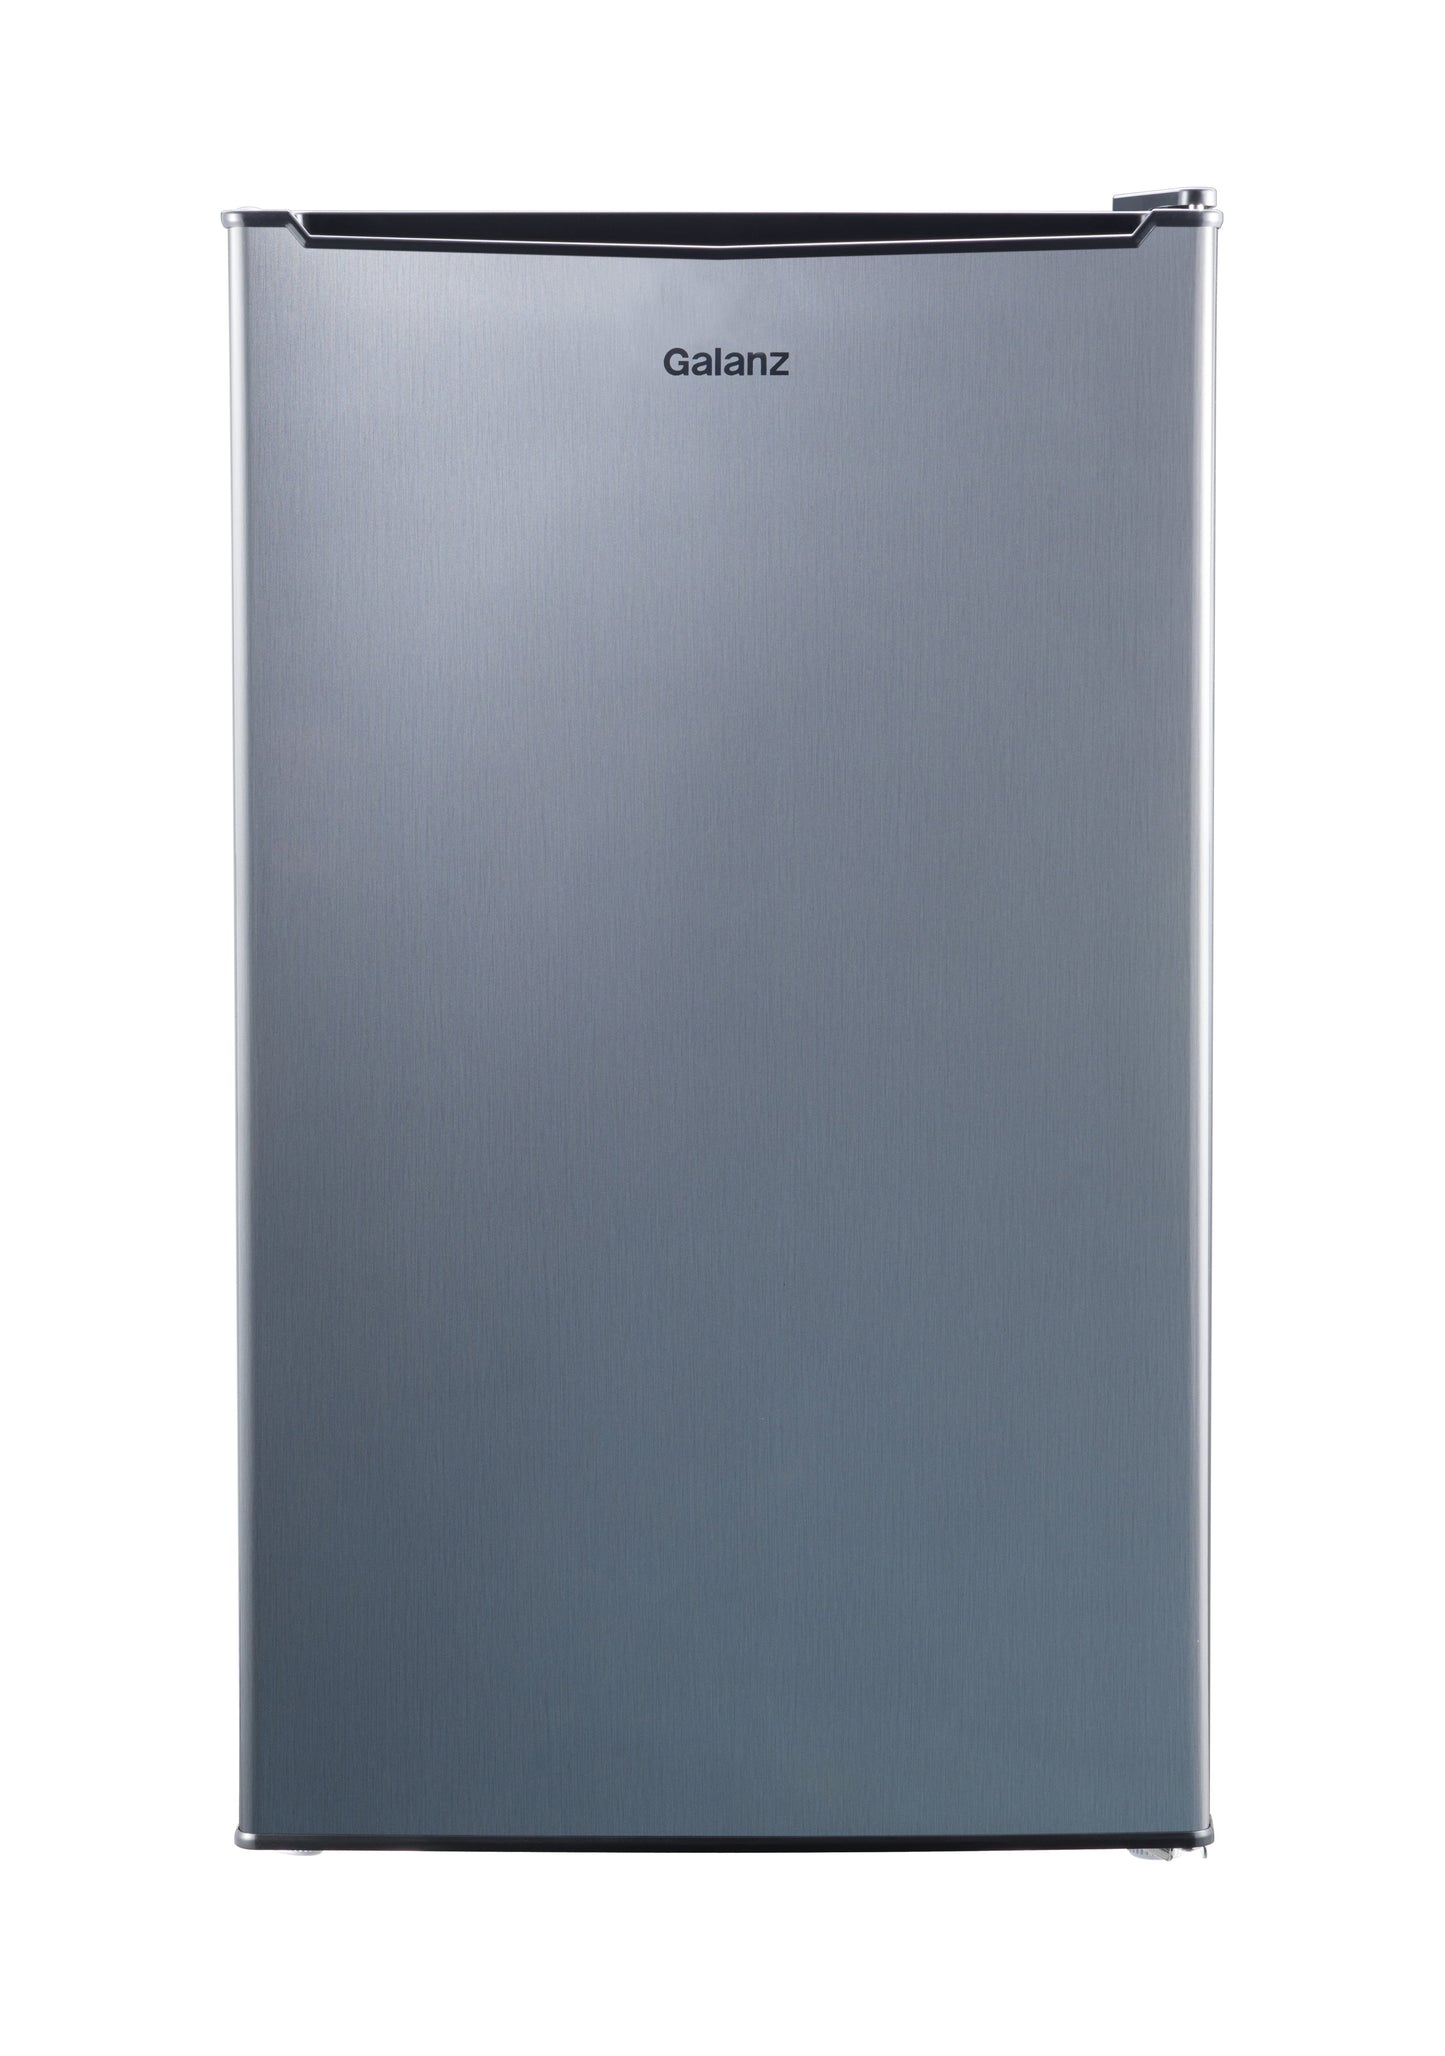 Galanz 3.3 cu ft One Door Mini Fridge, Estar, Stainless Steel Look